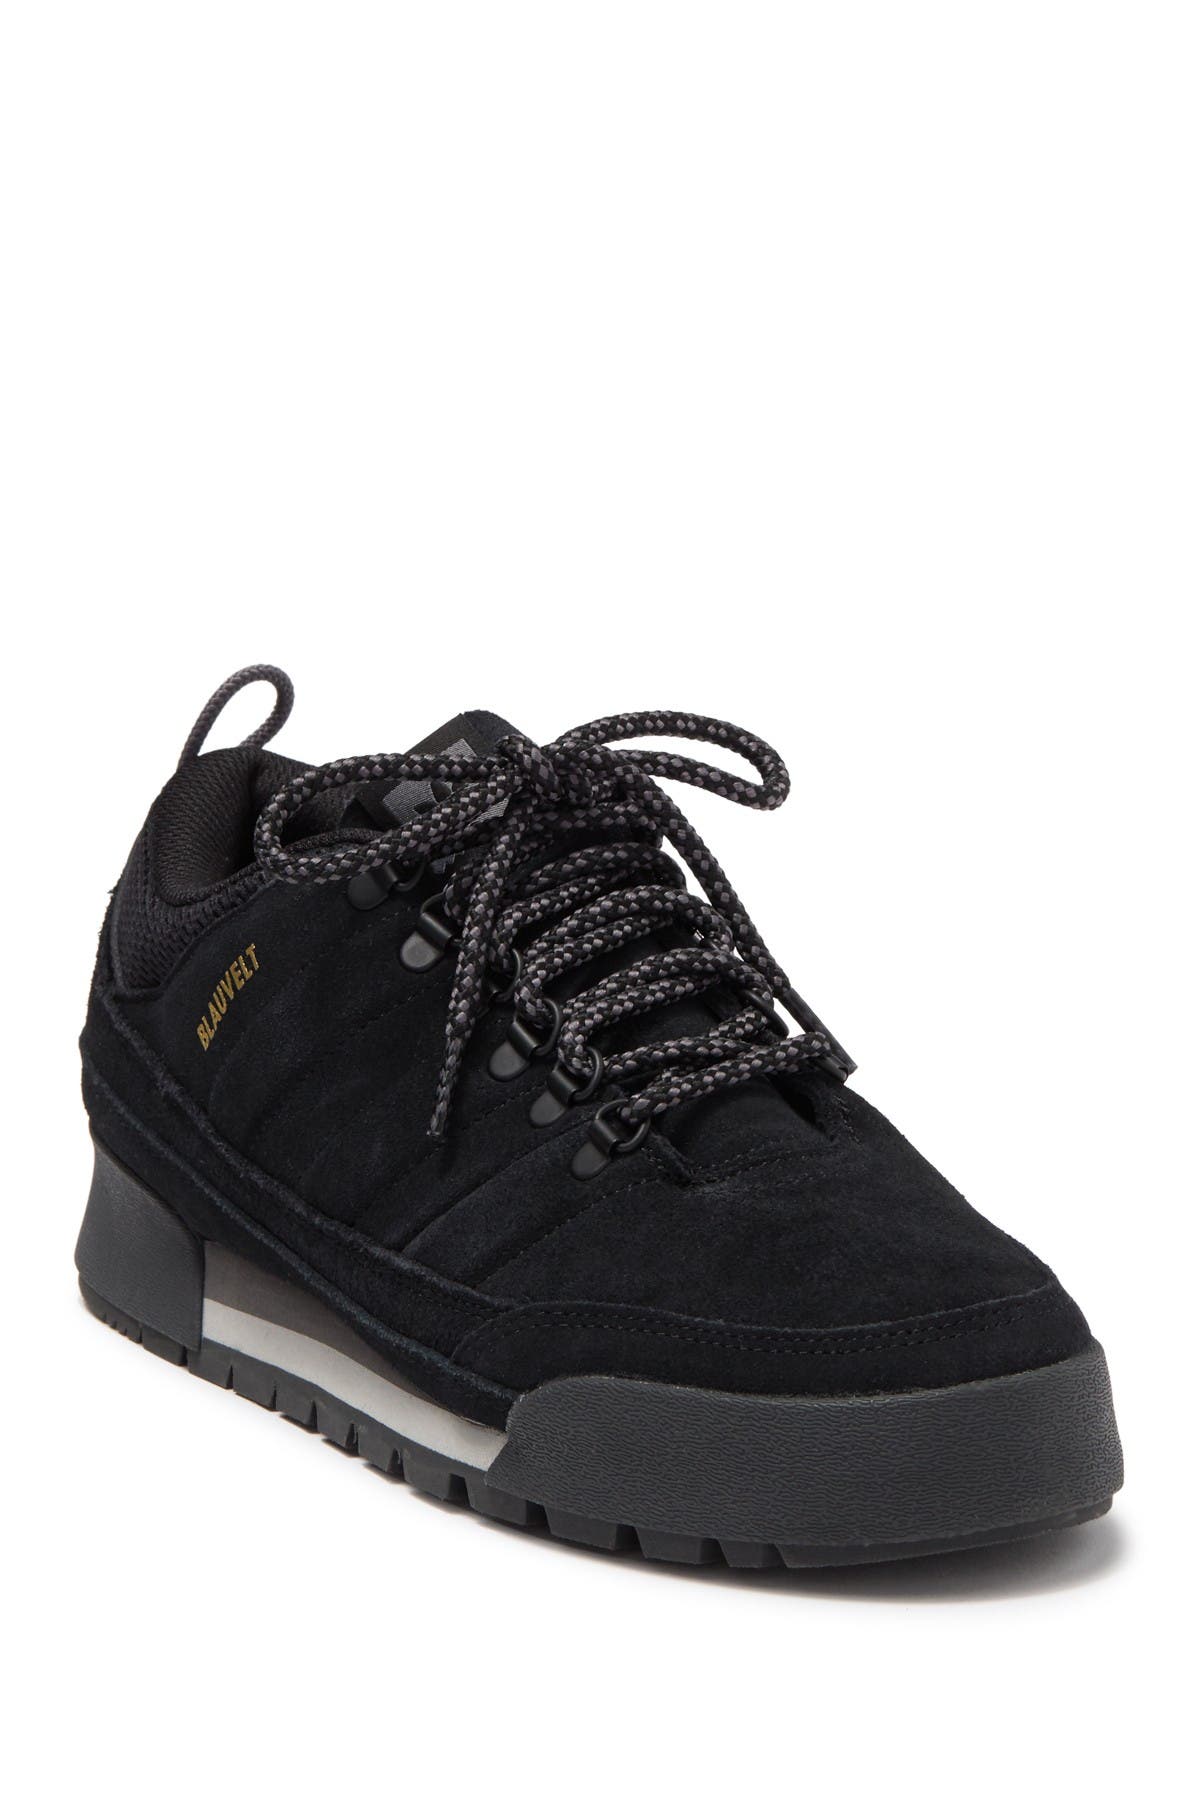 adidas jake boot 2.0 low black